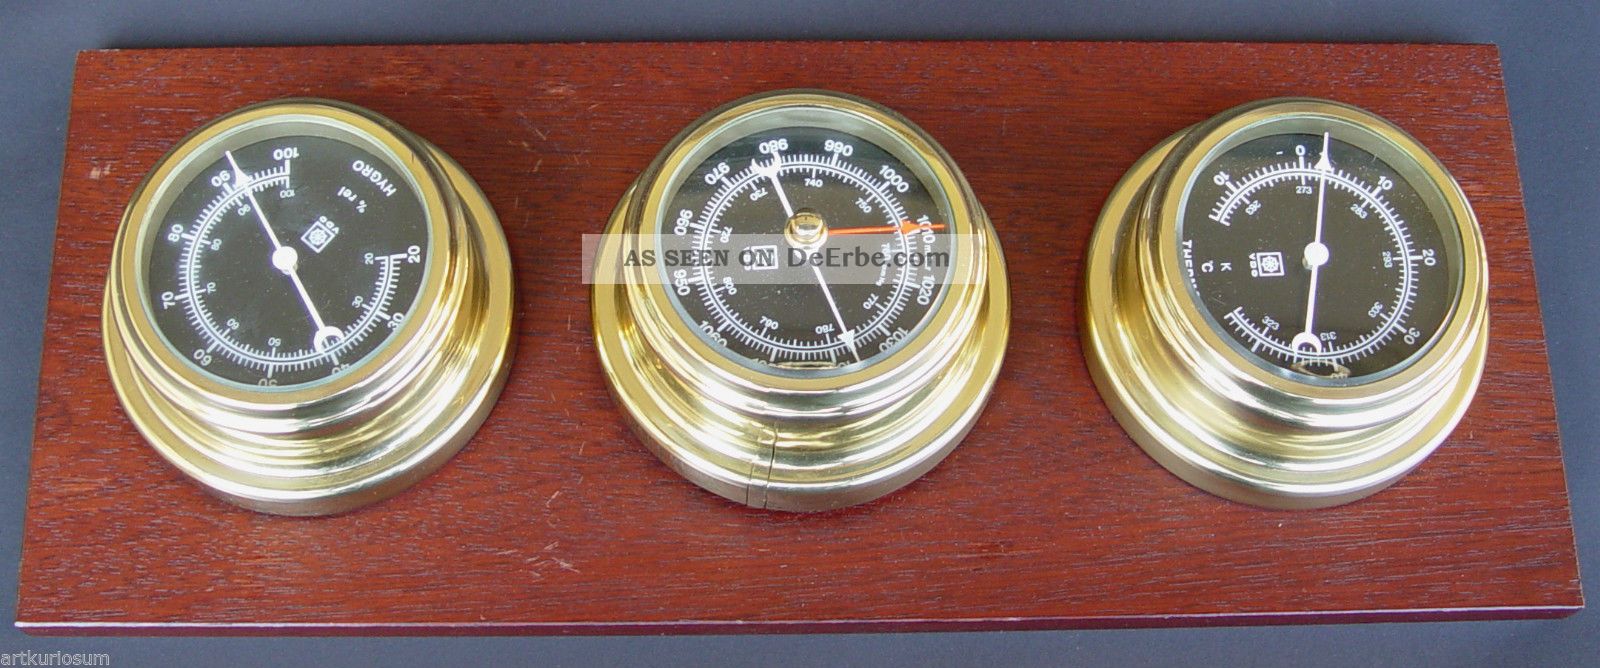 Vdo Wetterstation,  Hygometer - Barometer - Thermometer,  In Nautischem Design Wettergeräte Bild